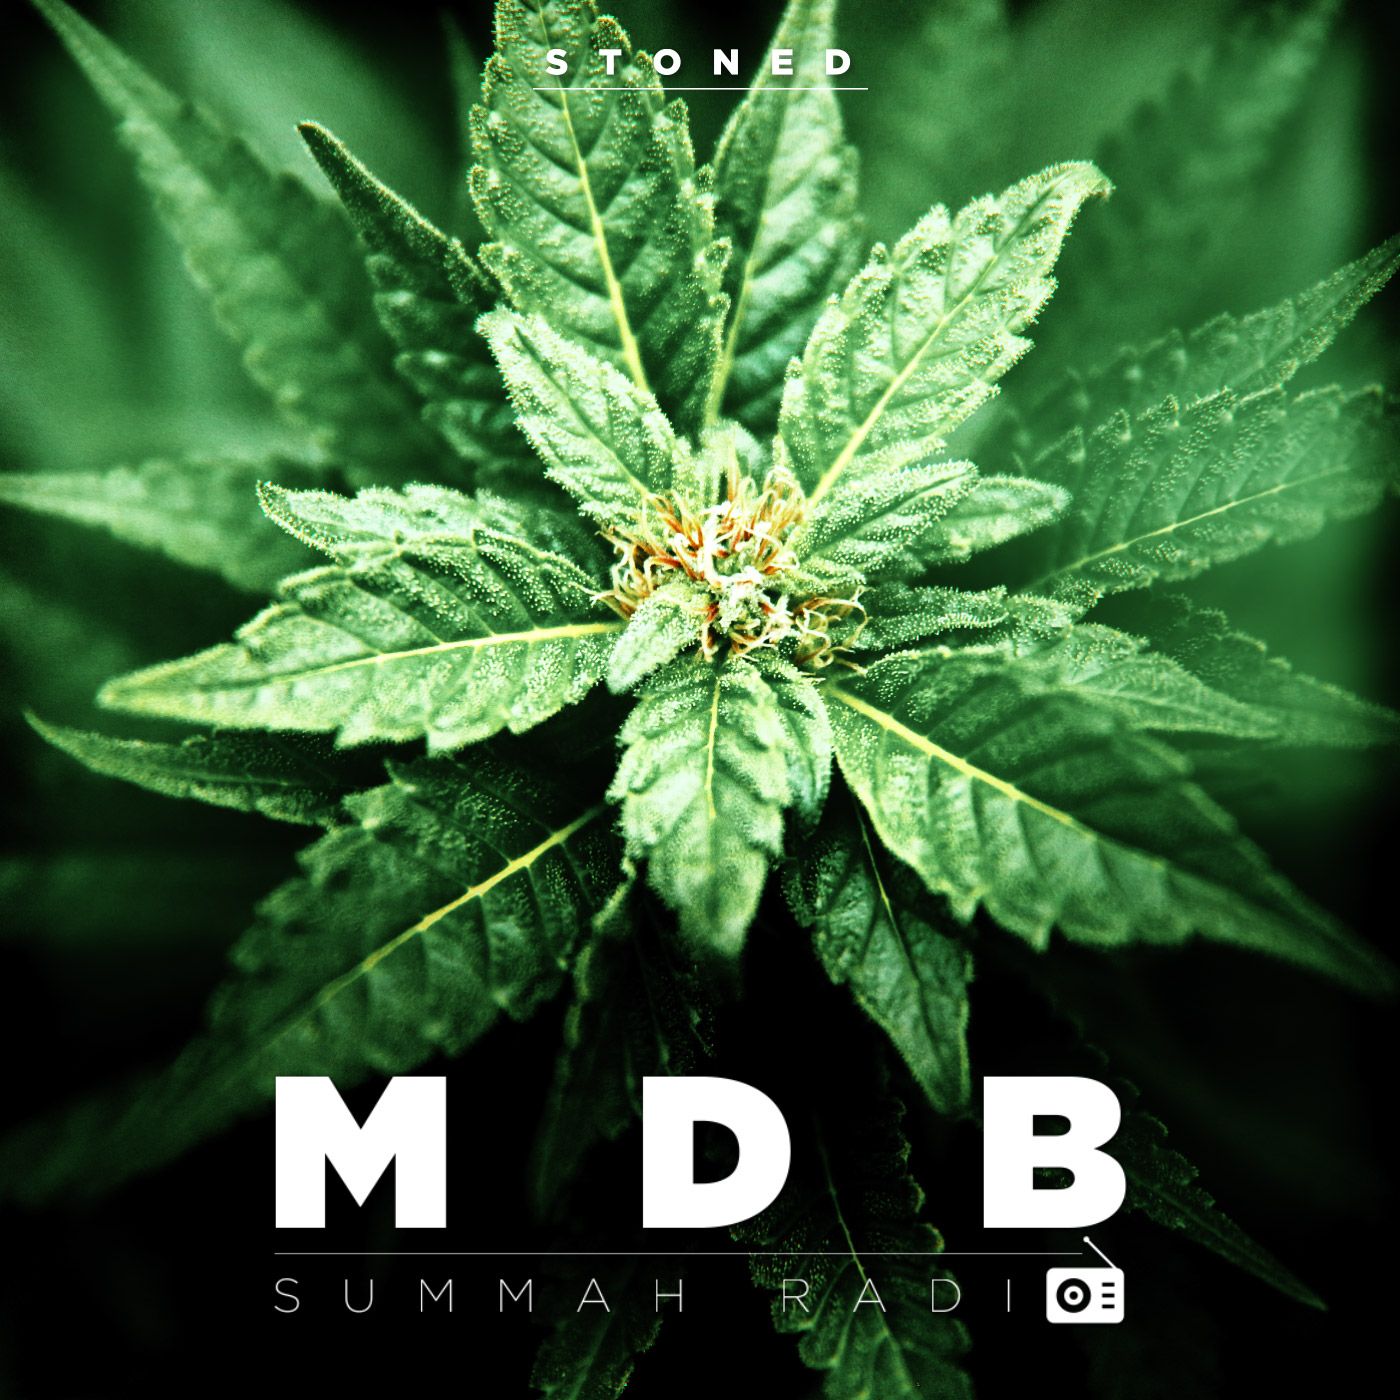 MDB Summah Radio ep. 5 "Stoned"